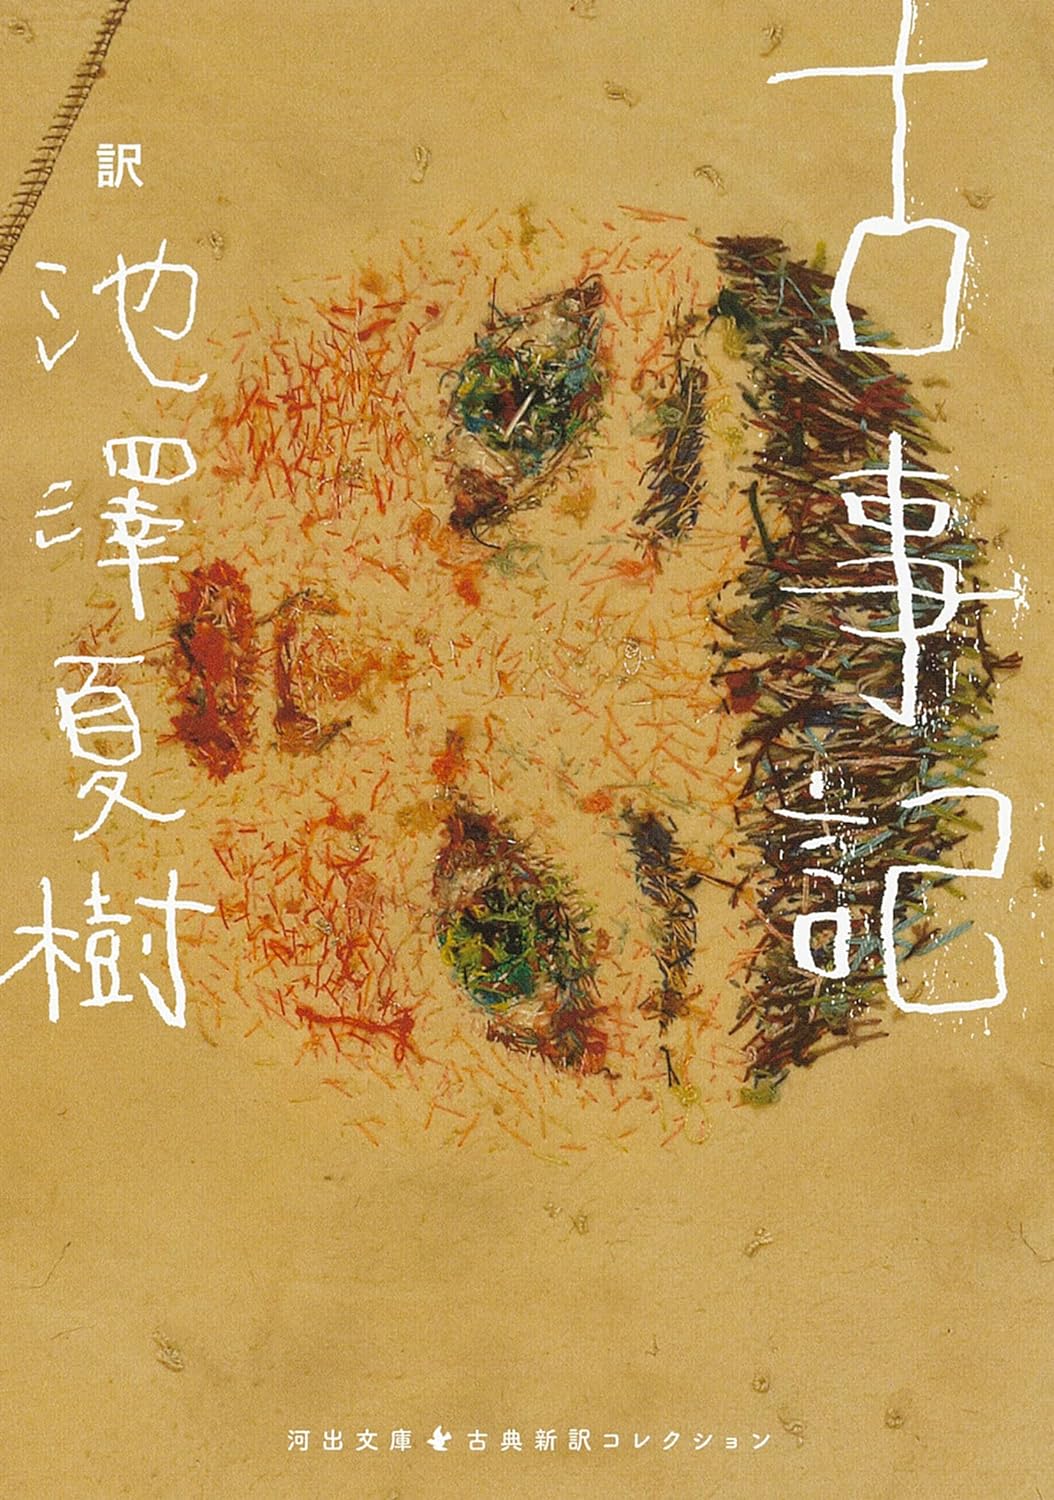 池澤夏樹新訳の『古事記』が文庫本になりました。